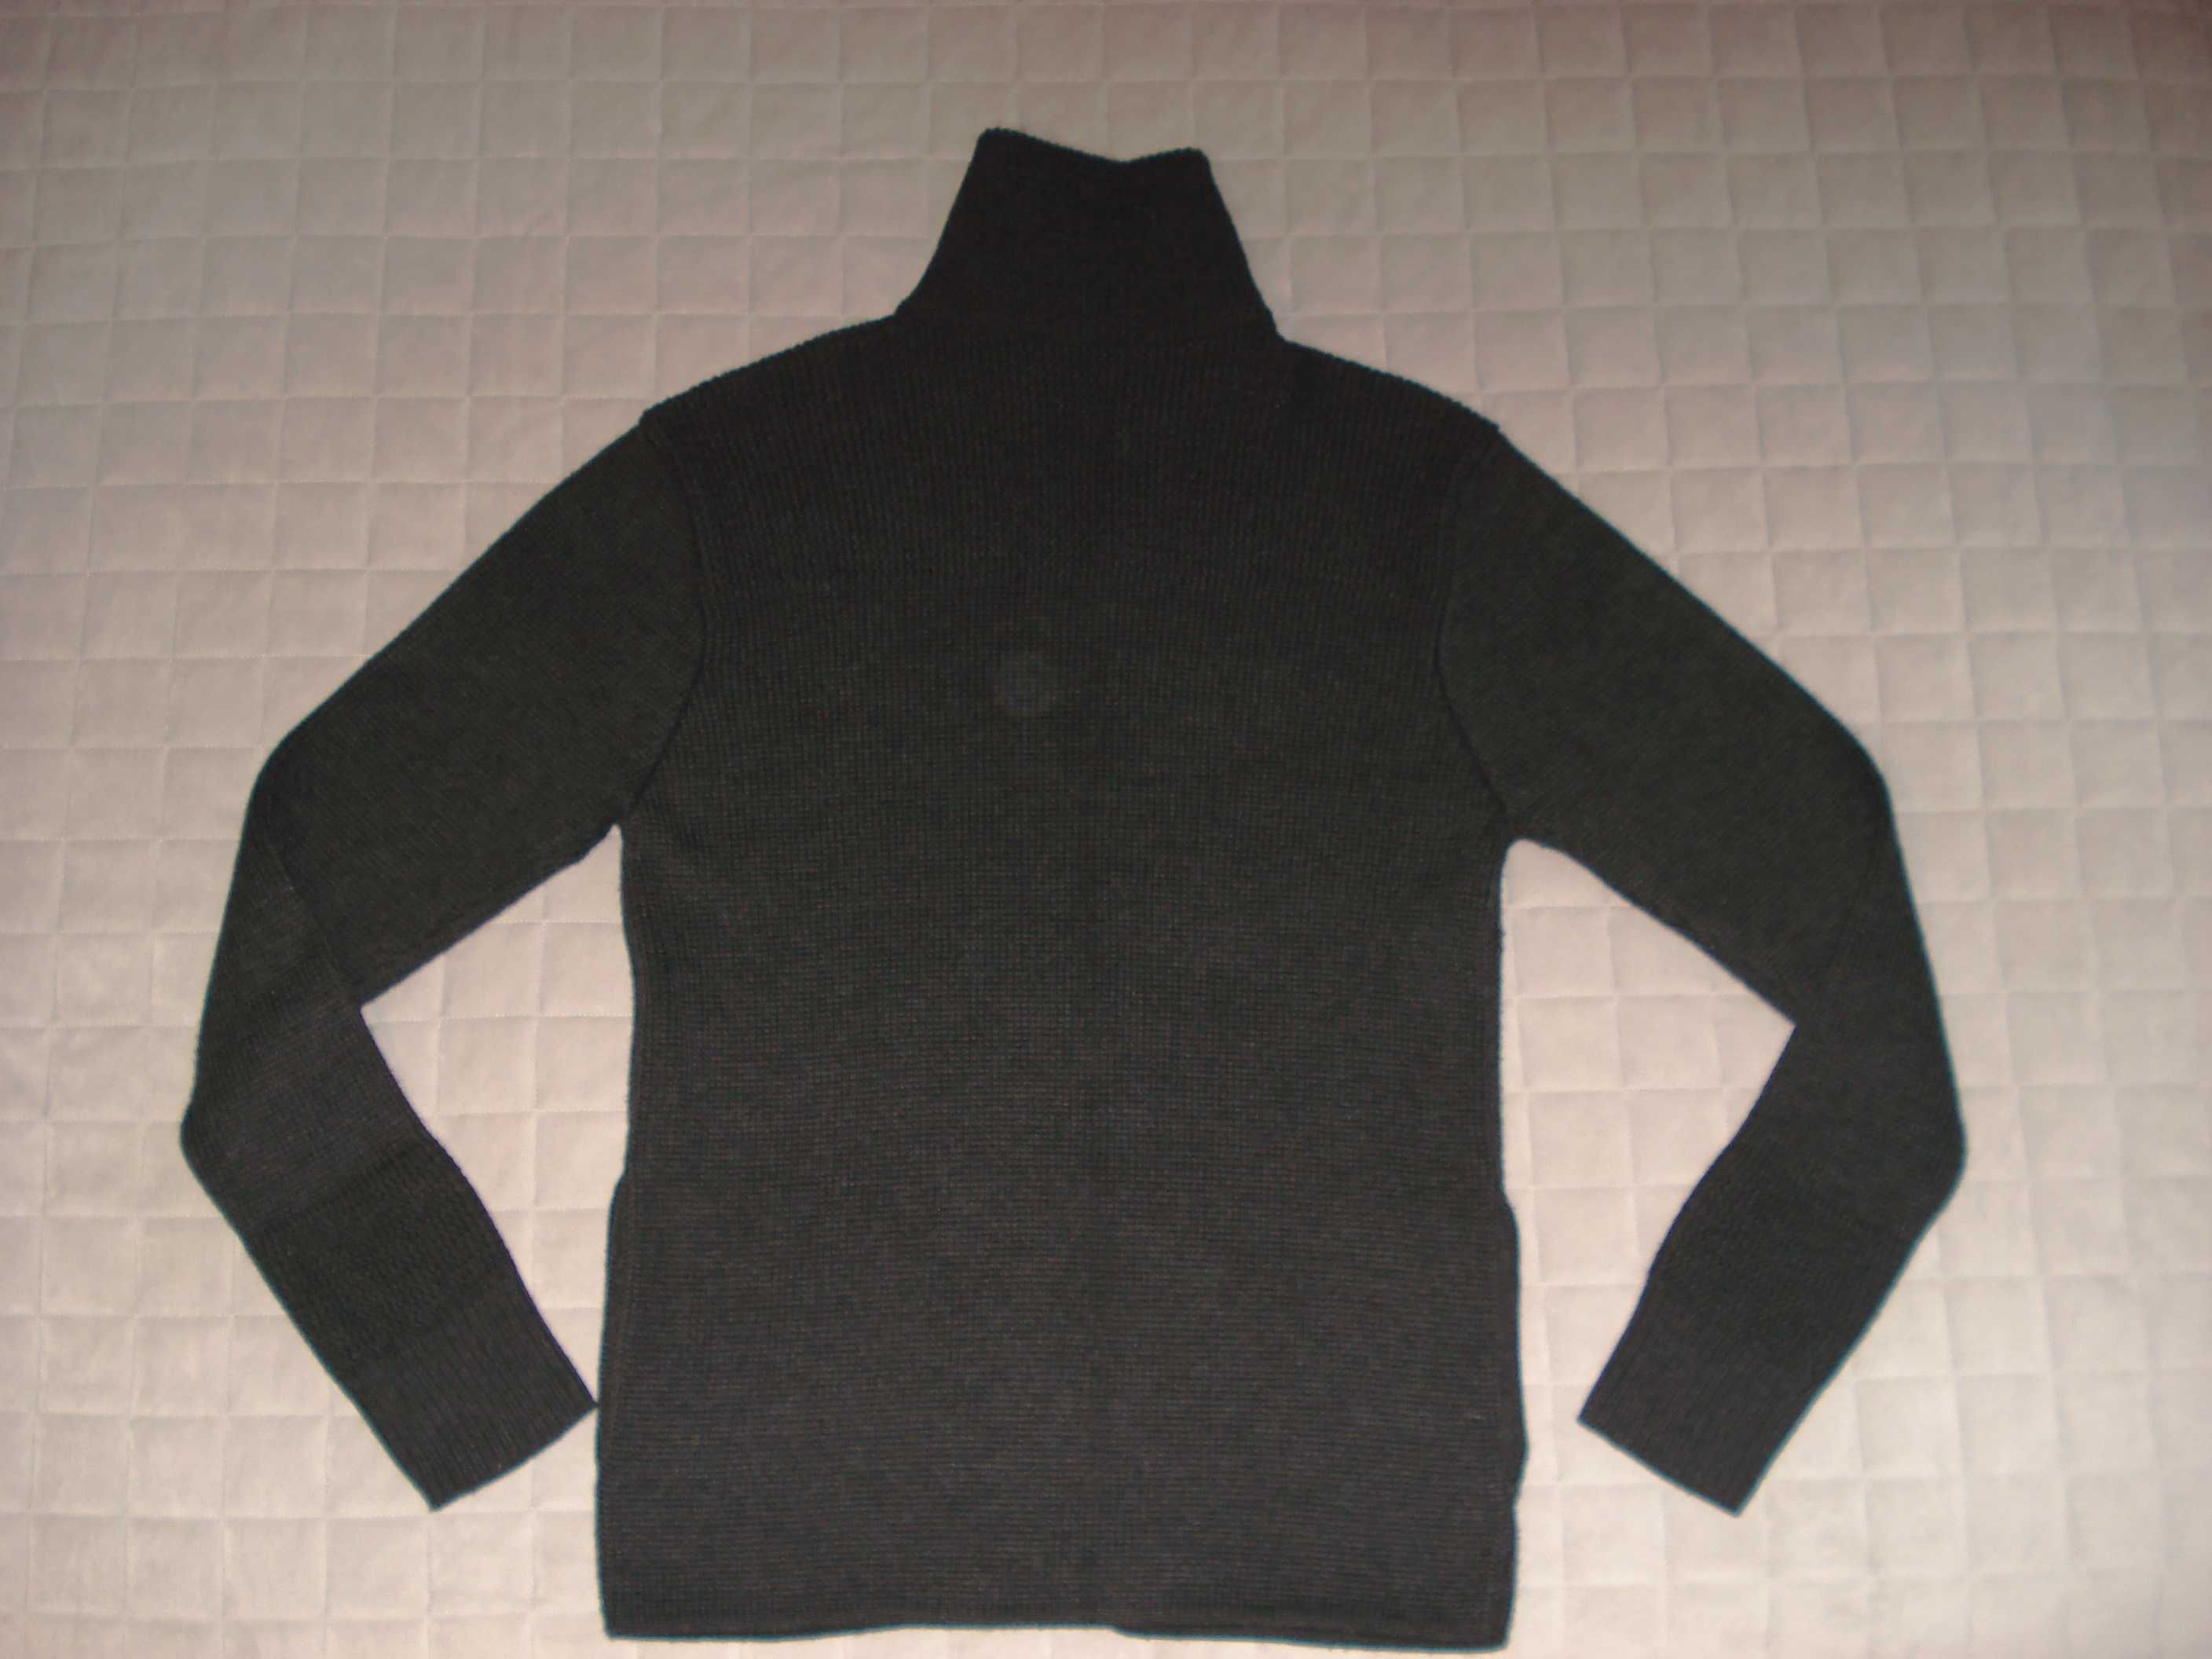 Czarny włoski męski sweter oryginał D.A.Italia pachy ok 90-100cm obwód